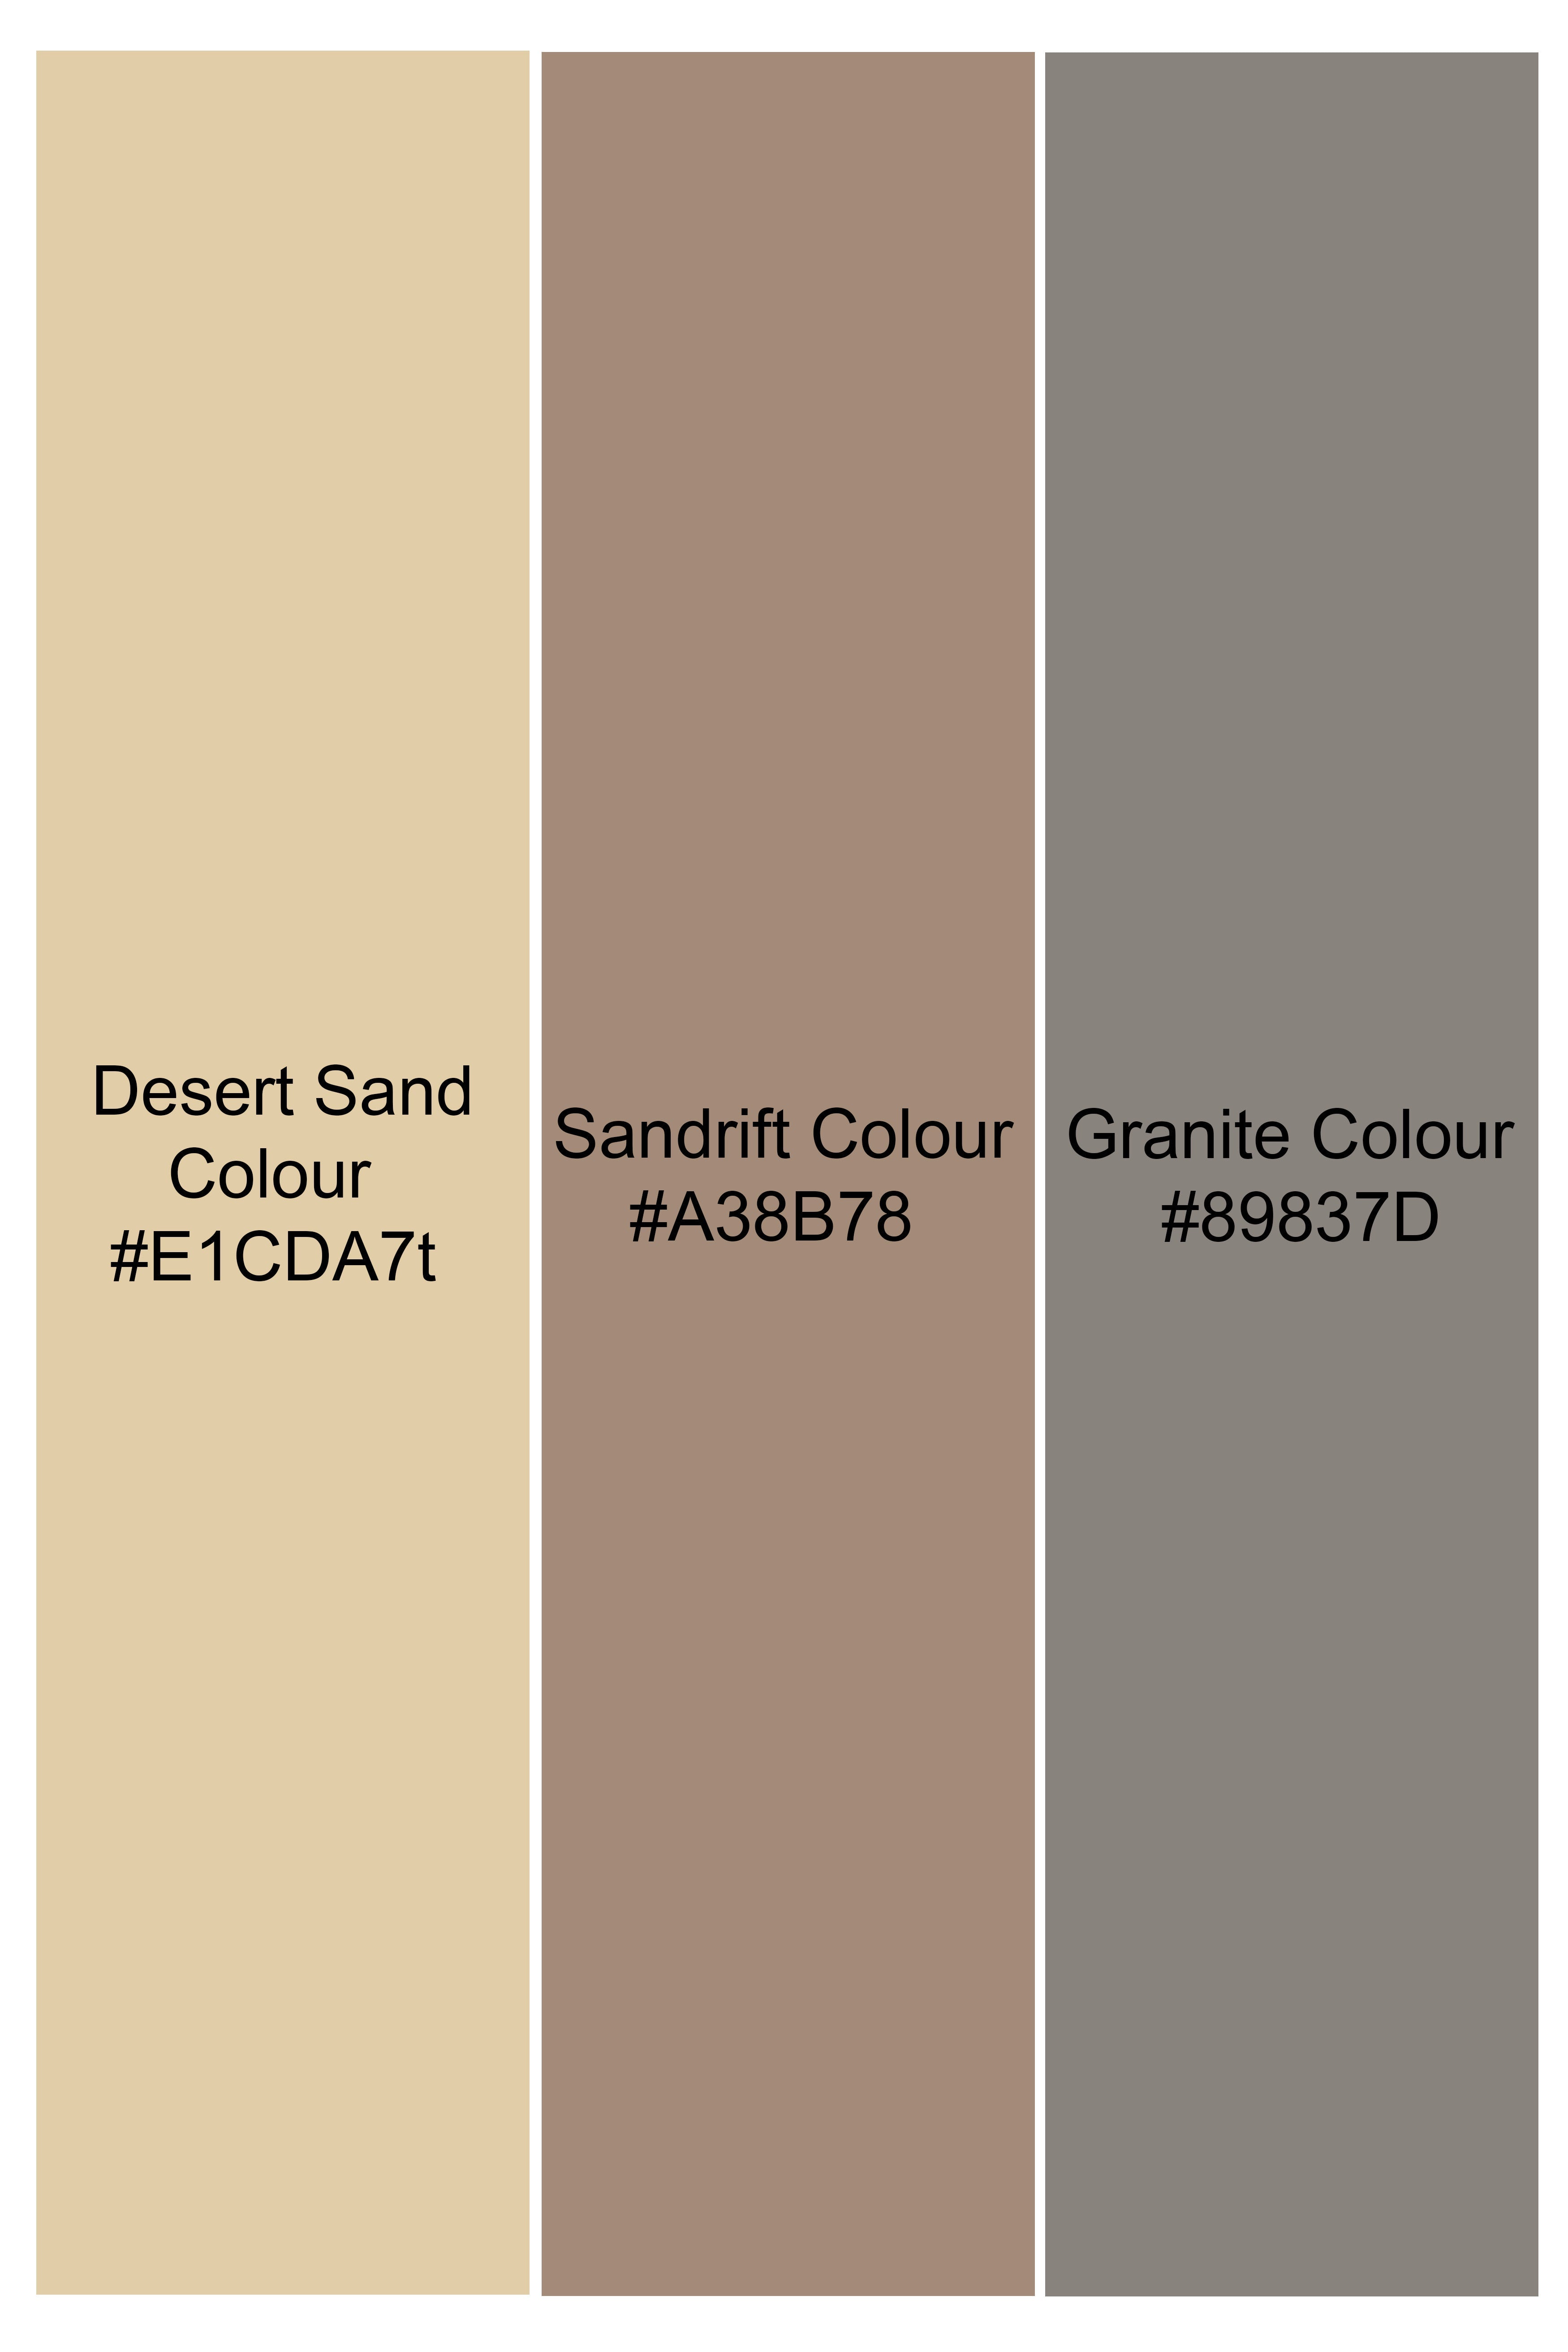 Desert Sand Beige and Sandrift Brown Premium Cotton Designer Blazer BL2860-SB-D110-36, BL2860-SB-D110-38, BL2860-SB-D110-40, BL2860-SB-D110-42, BL2860-SB-D110-44, BL2860-SB-D110-46, BL2860-SB-D110-48, BL2860-SB-D110-50, BL2860-SB-D110-52, BL2860-SB-D110-54, BL2860-SB-D110-56, BL2860-SB-D110-58, BL2860-SB-D110-60